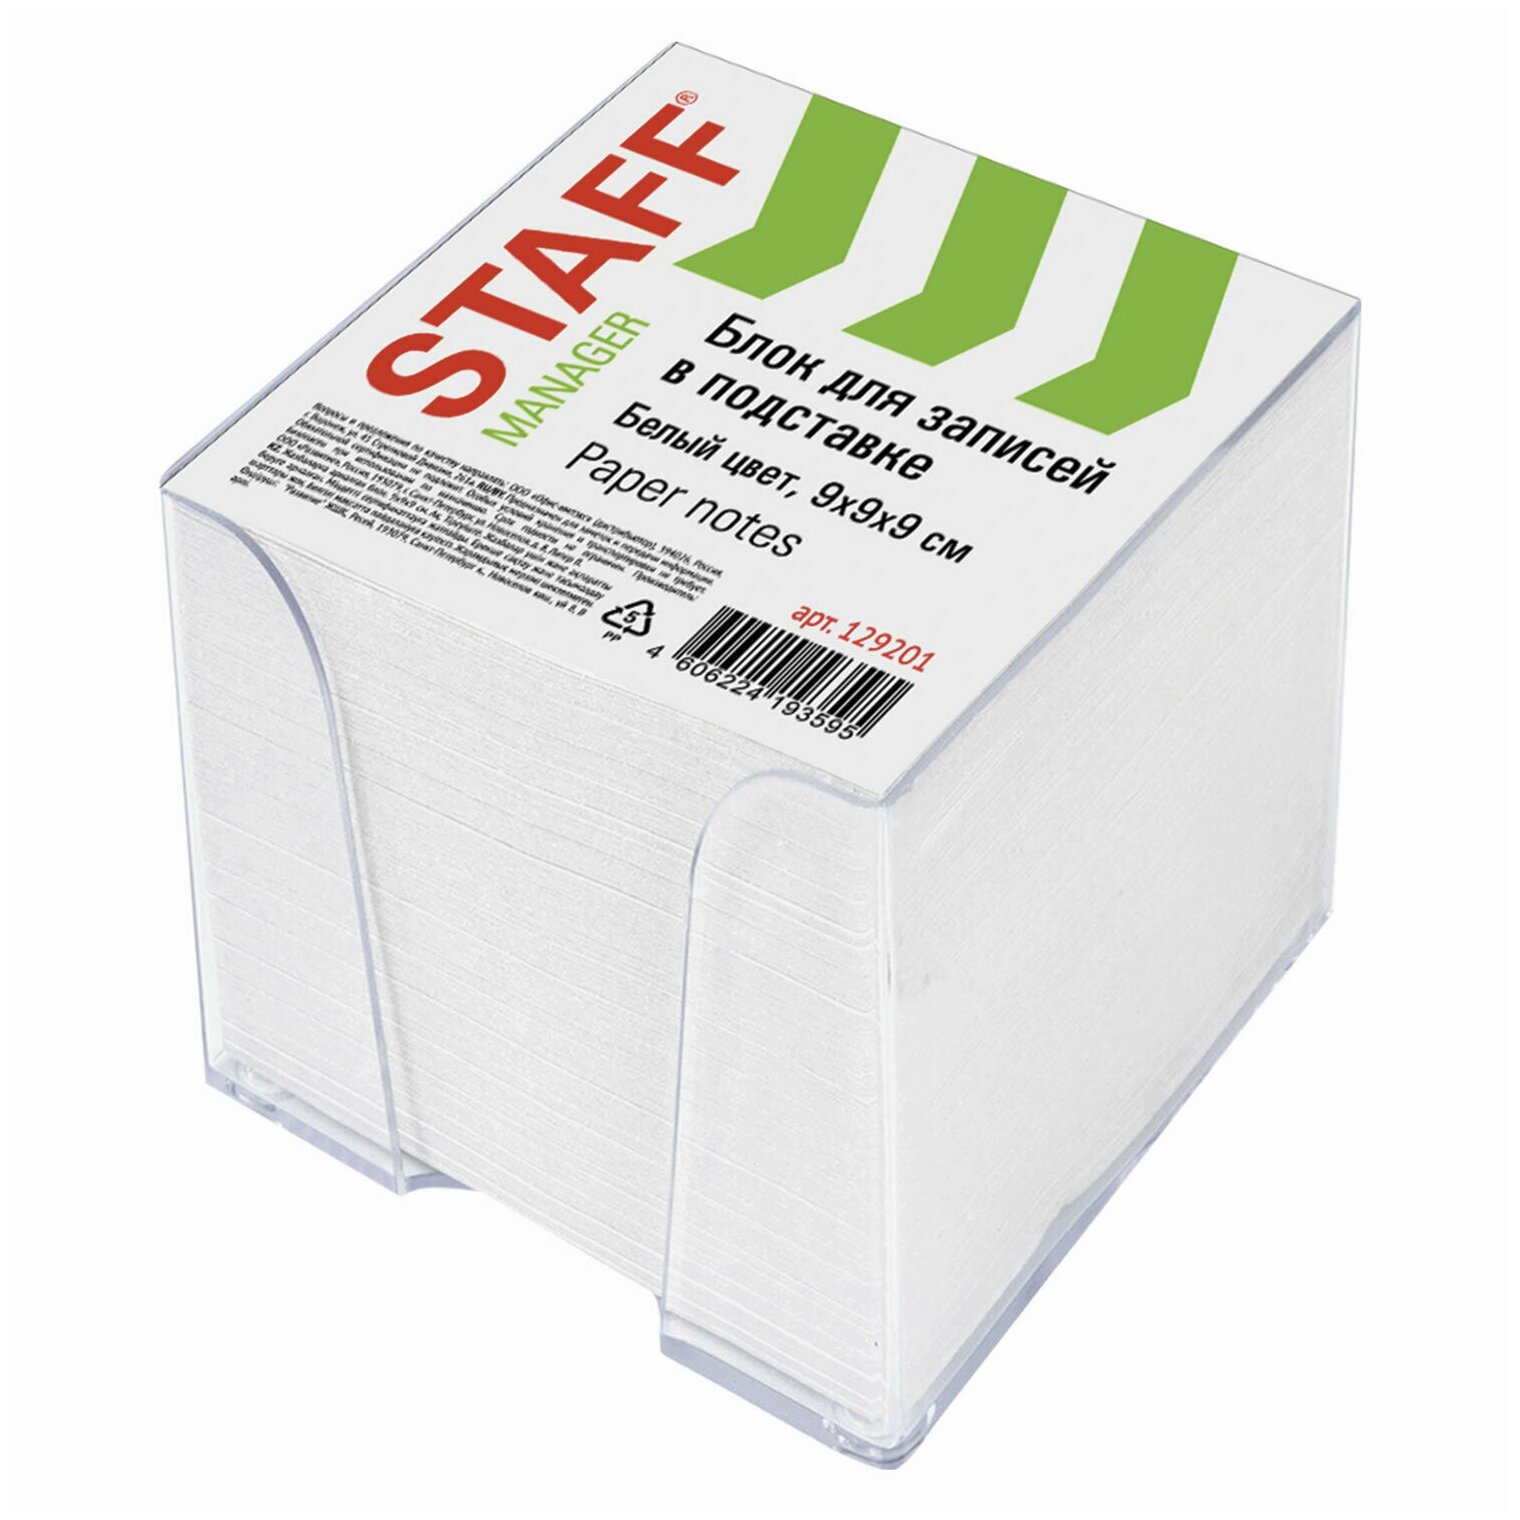 Блок для записей STAFF в подставке прозрачной, куб 9х9х9 см, белый, белизна 90-92%, 129201 4 шт .